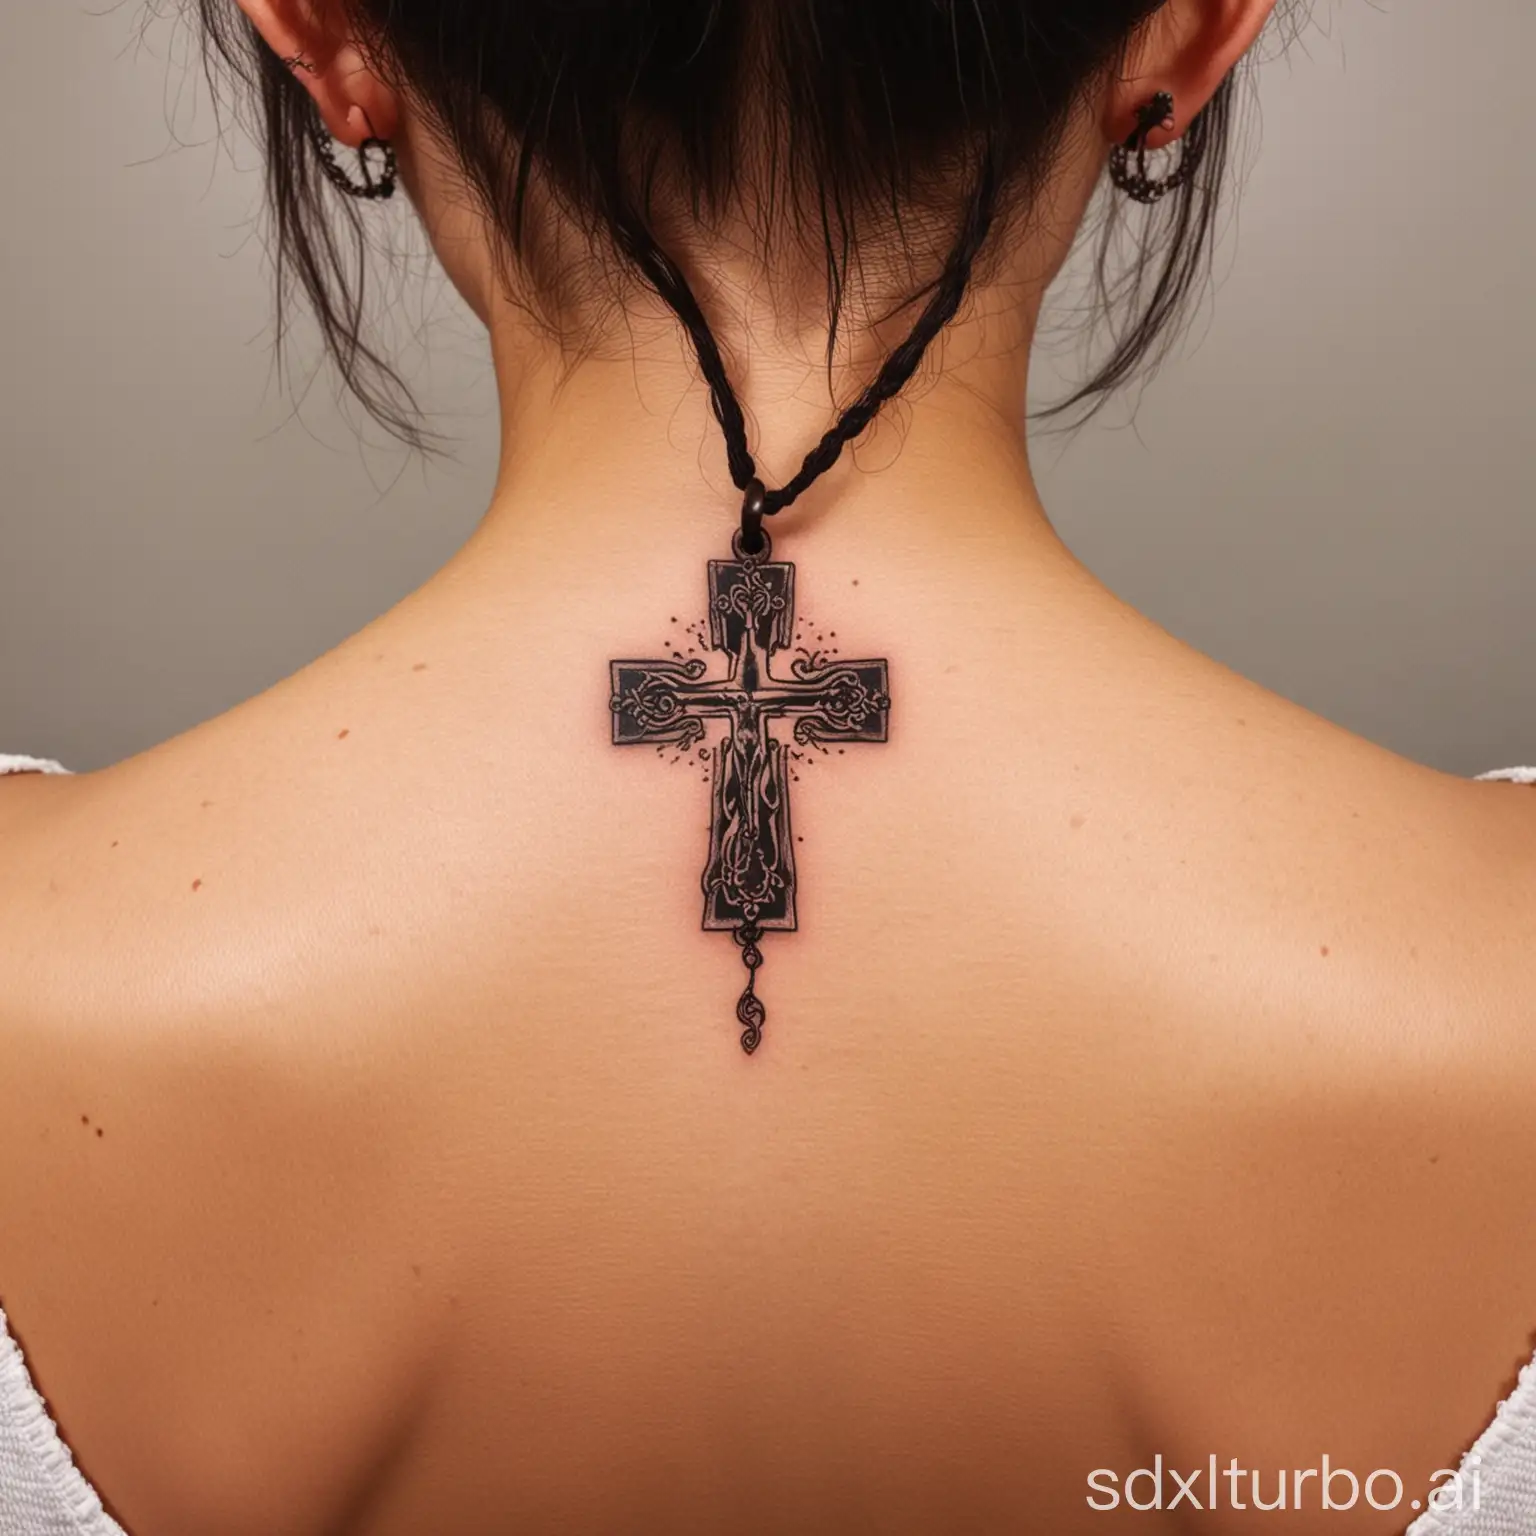 a beautiful small cross tattooed back of neck